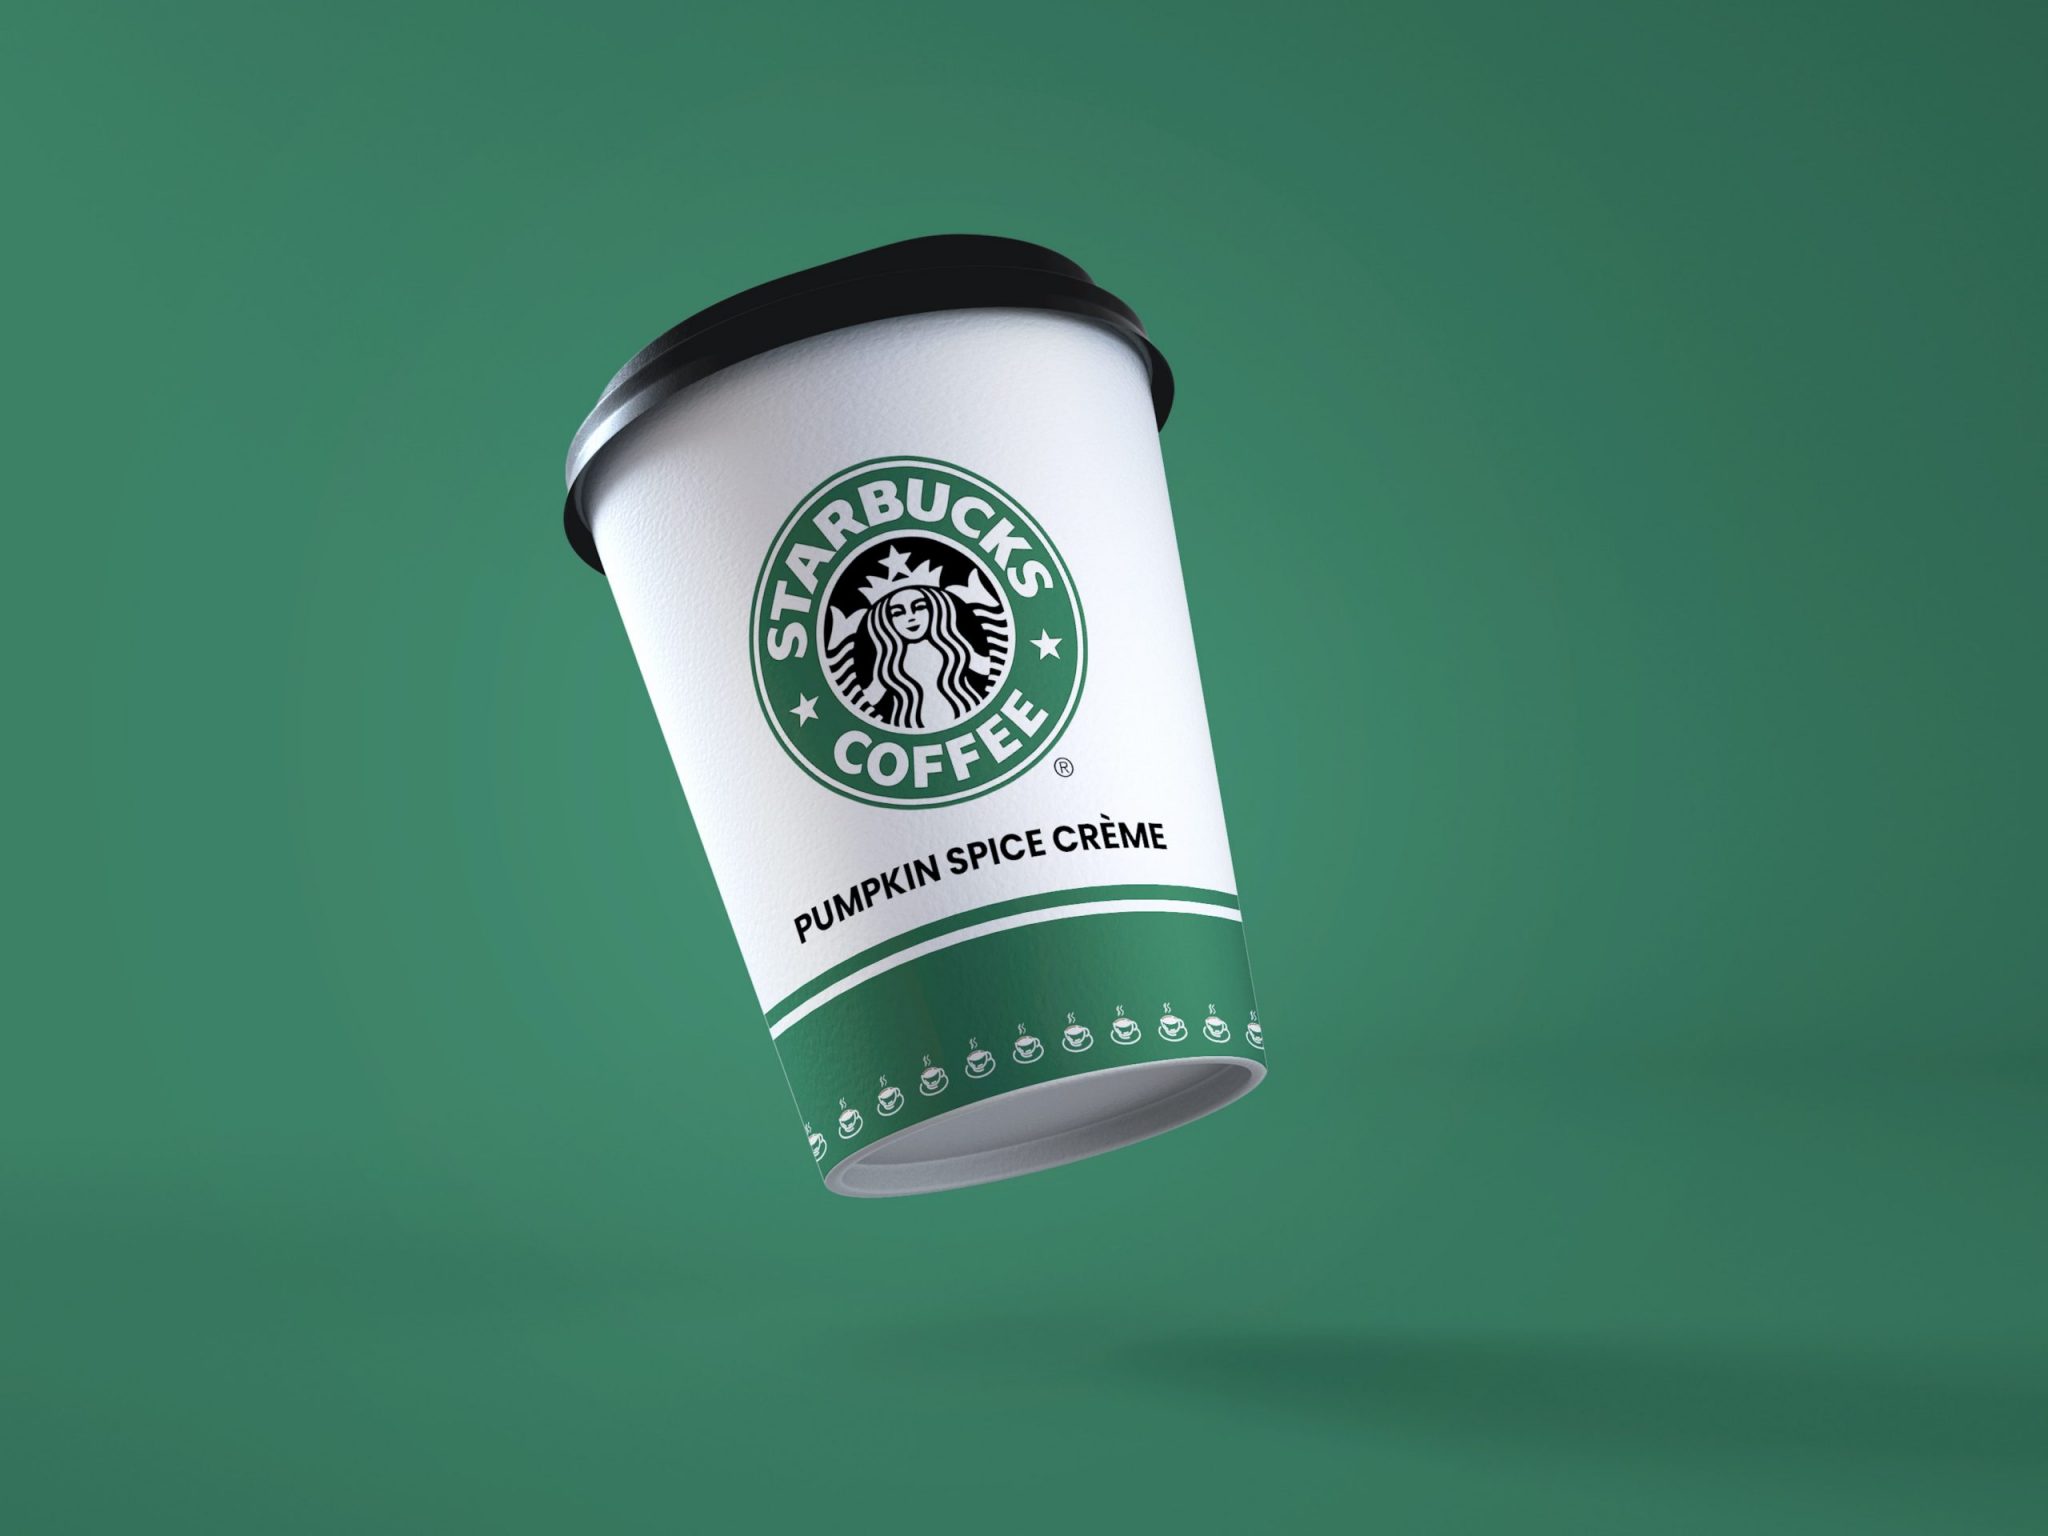 Starbucks planea convertir su "tesoro de activos" en NFT